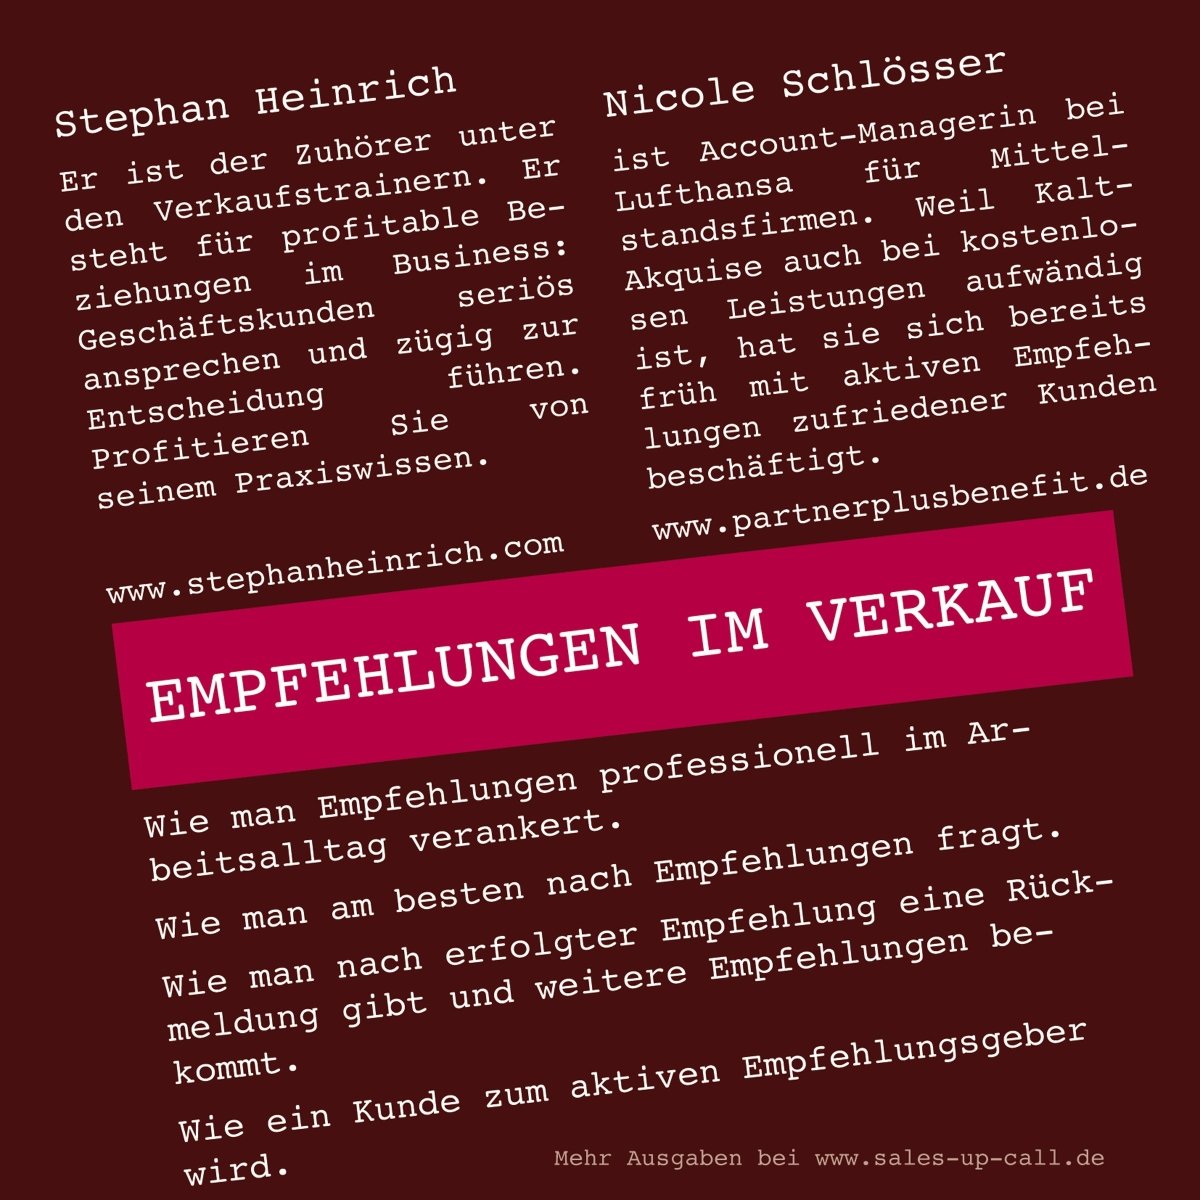 Empfehlungen im Verkauf - Sales-up-Call - Stephan Heinrich